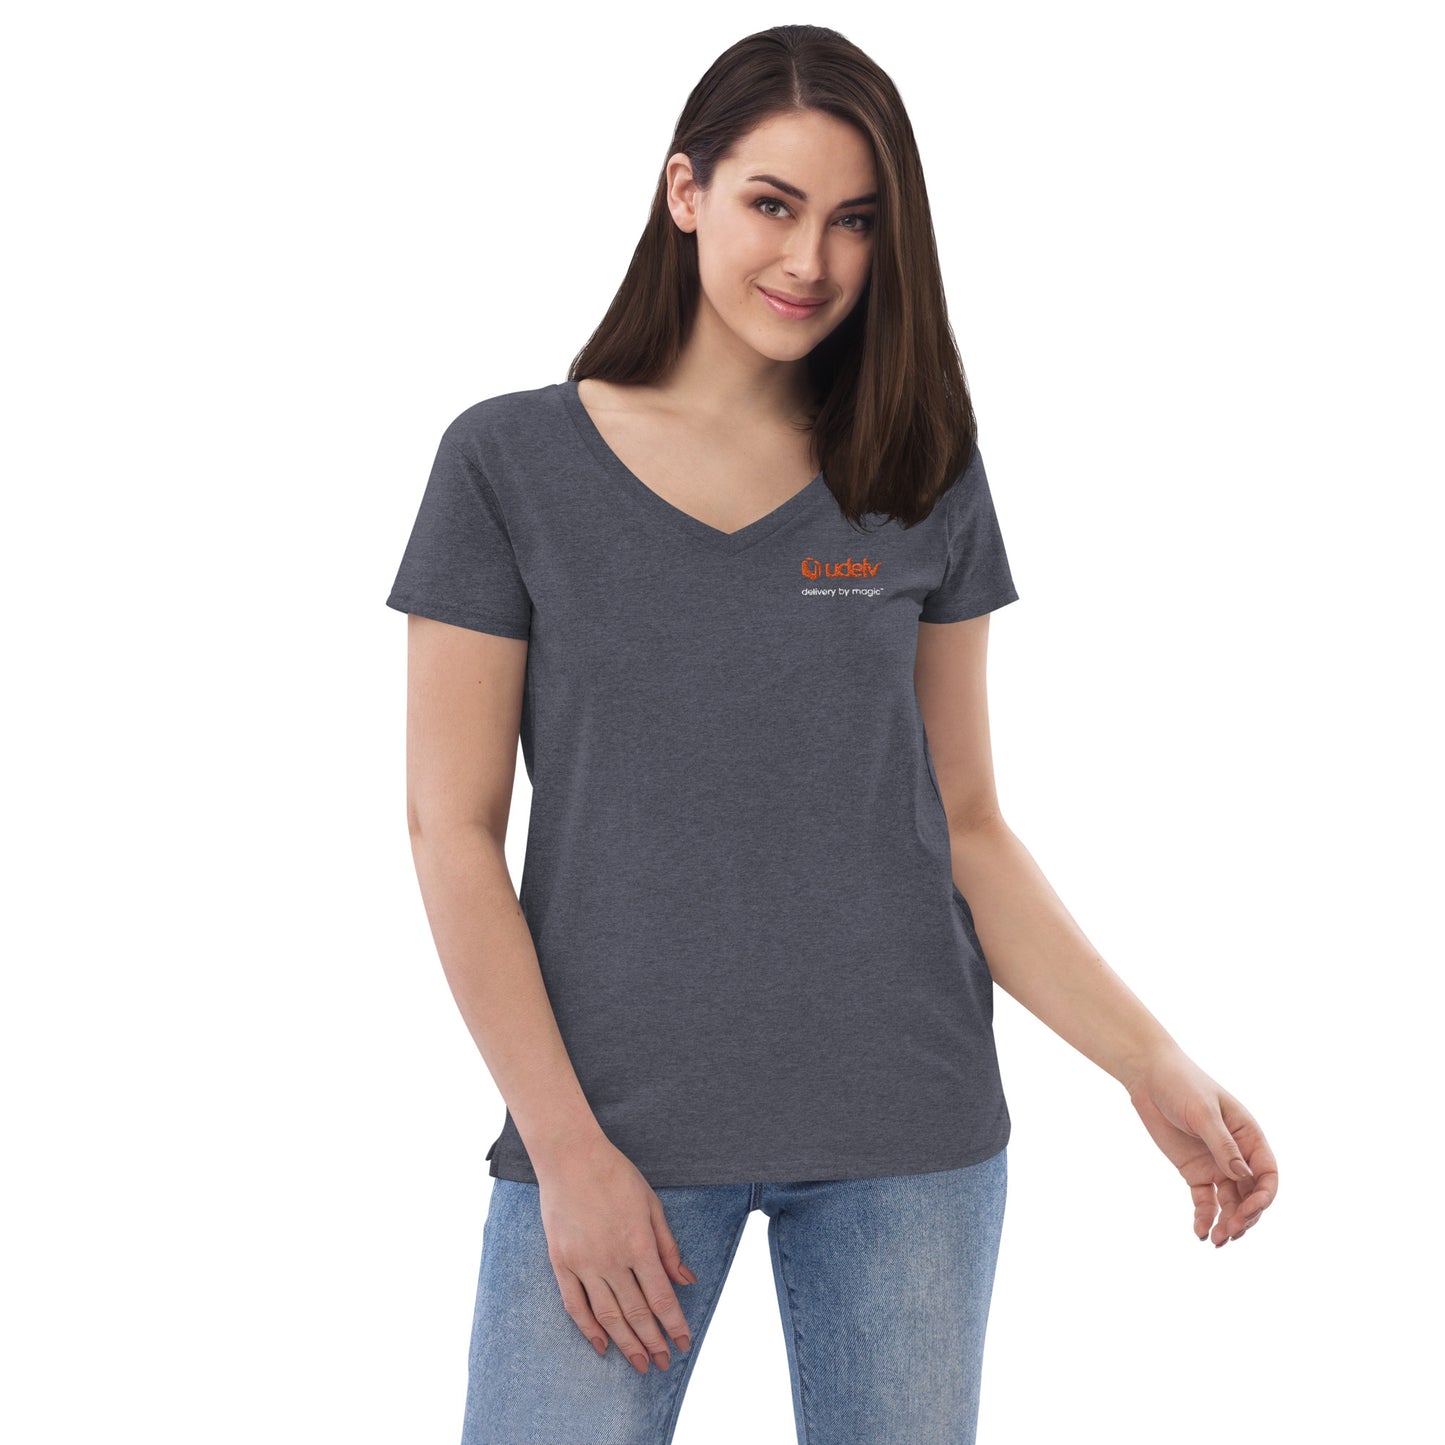 Udelv Women’s V-neck T-shirt